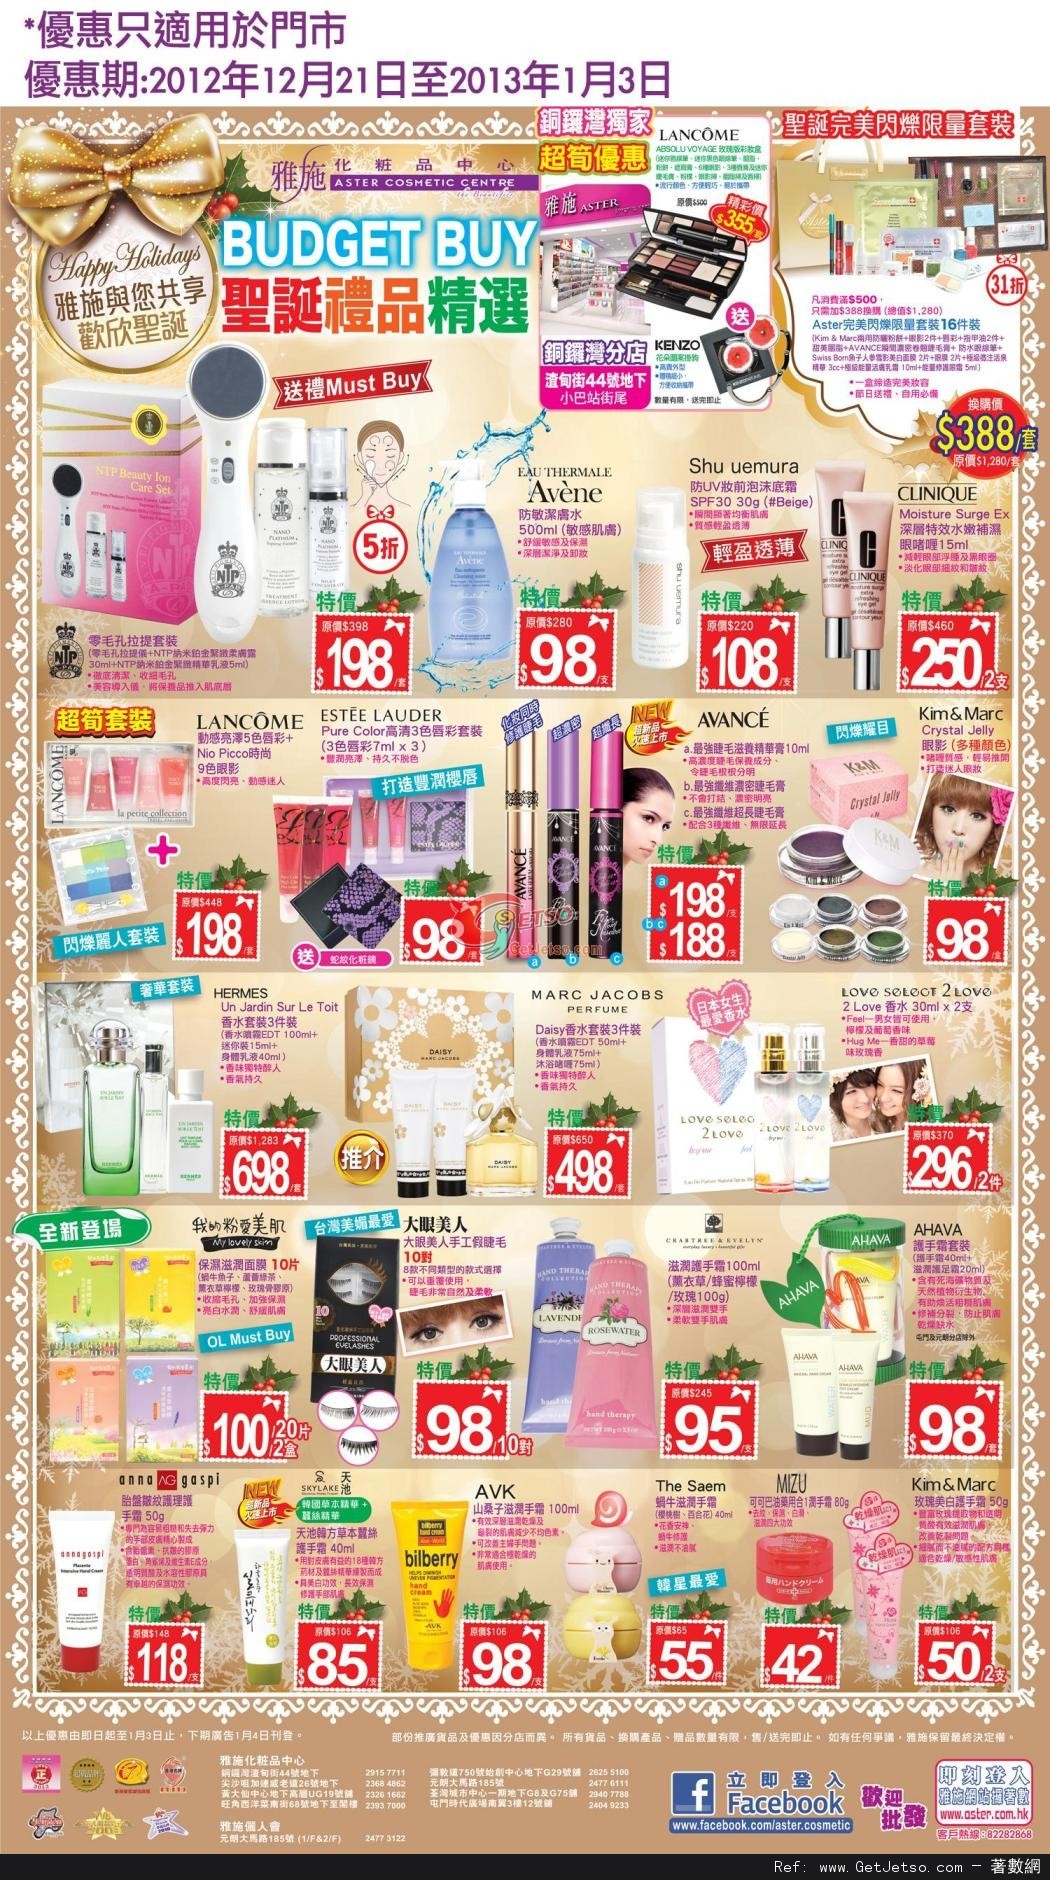 雅施化妝品中心聖誕禮品購買優惠(至13年1月3日)圖片1